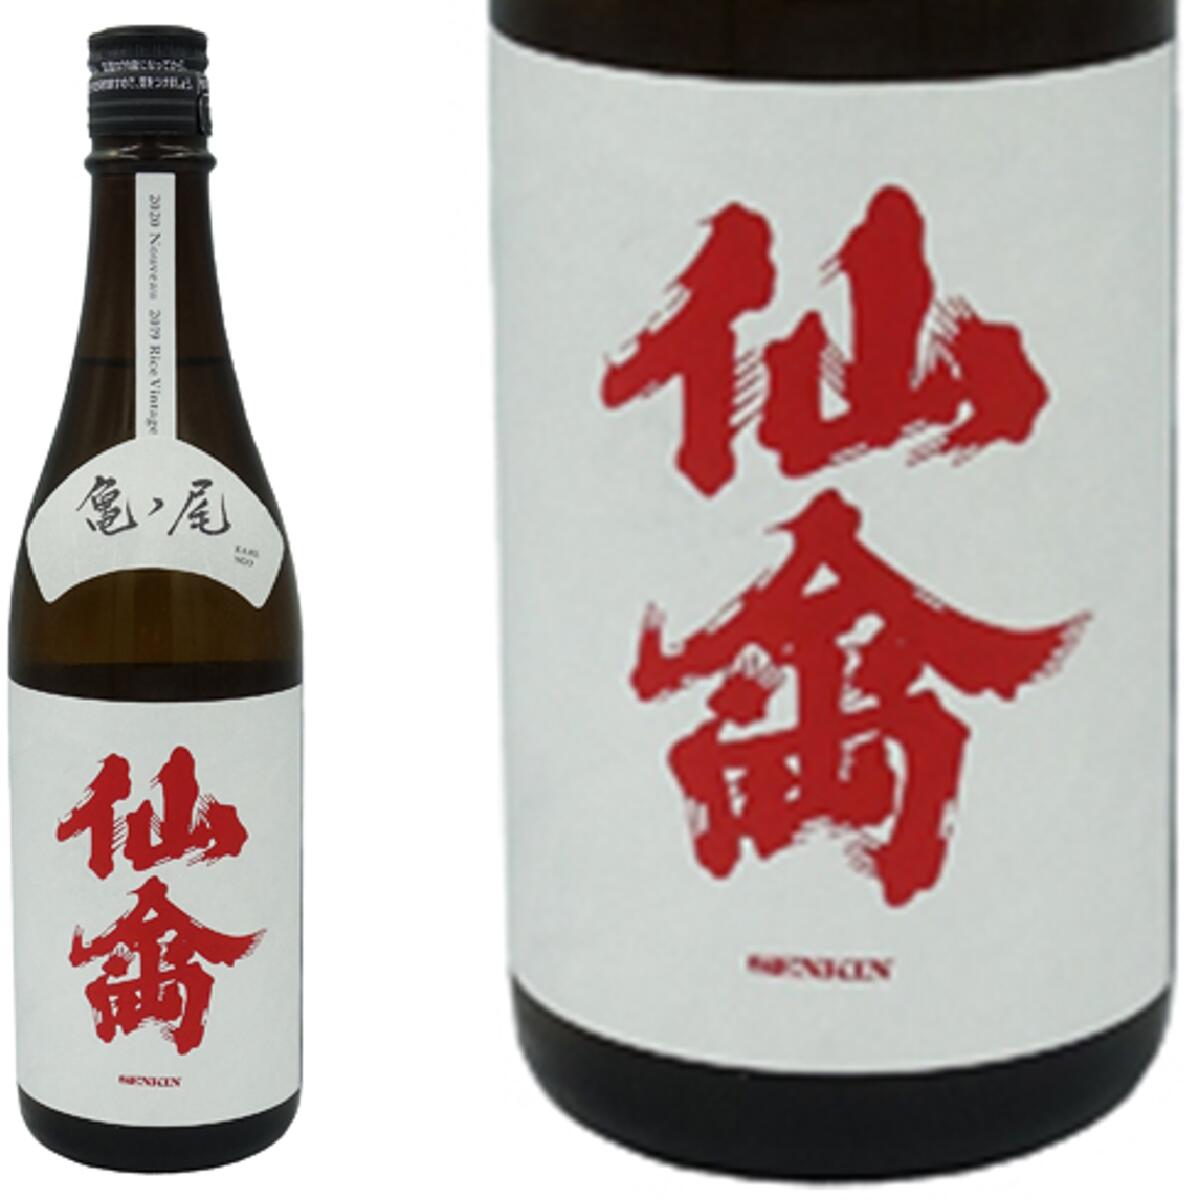 【日本酒】クラシック 仙禽 亀の尾 1800ml 生酛 無濾過原酒 栃木県 せんきん